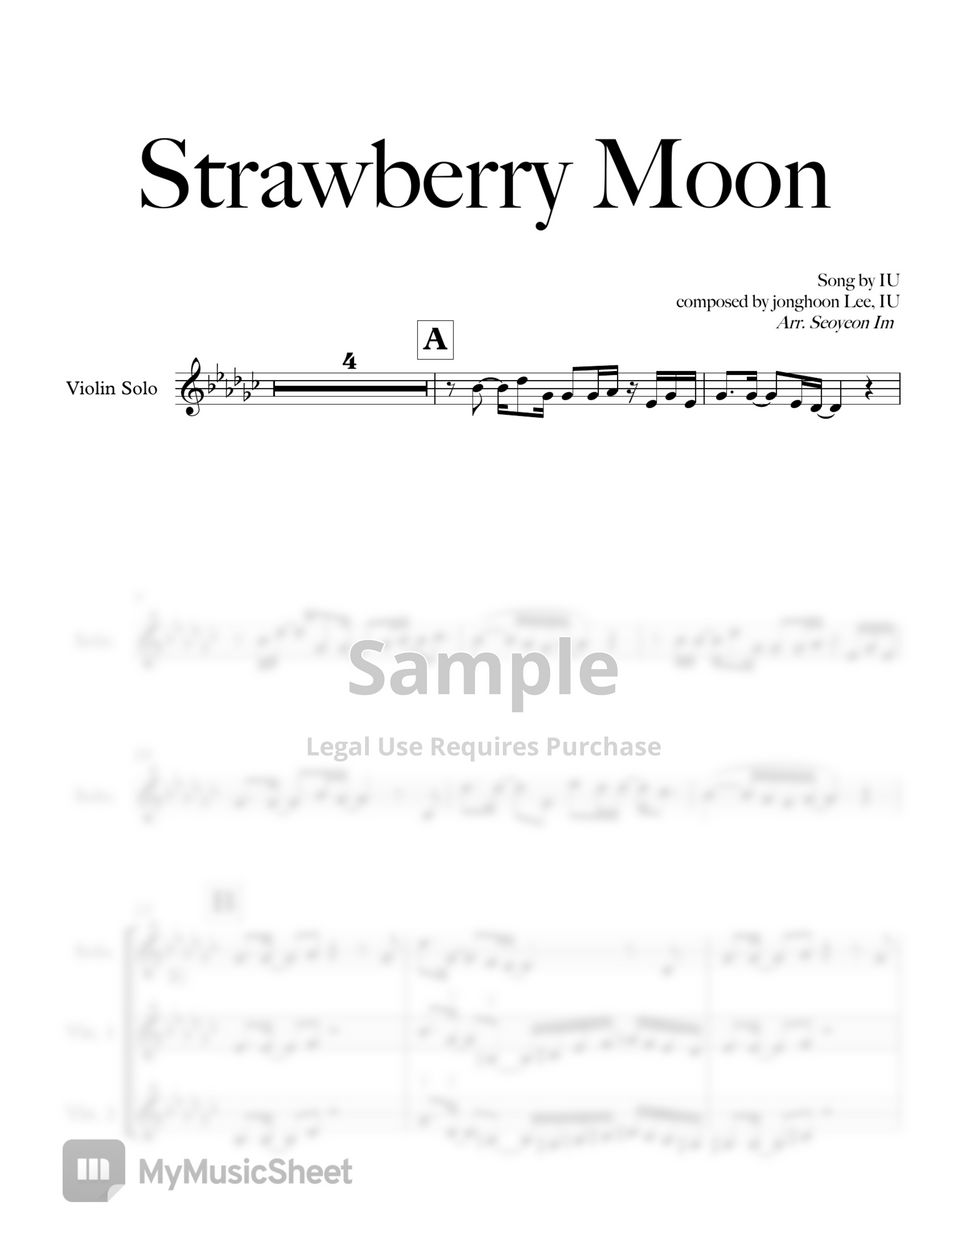 IU - Strawberry Moon (Violin & Strings) by V.OLIN